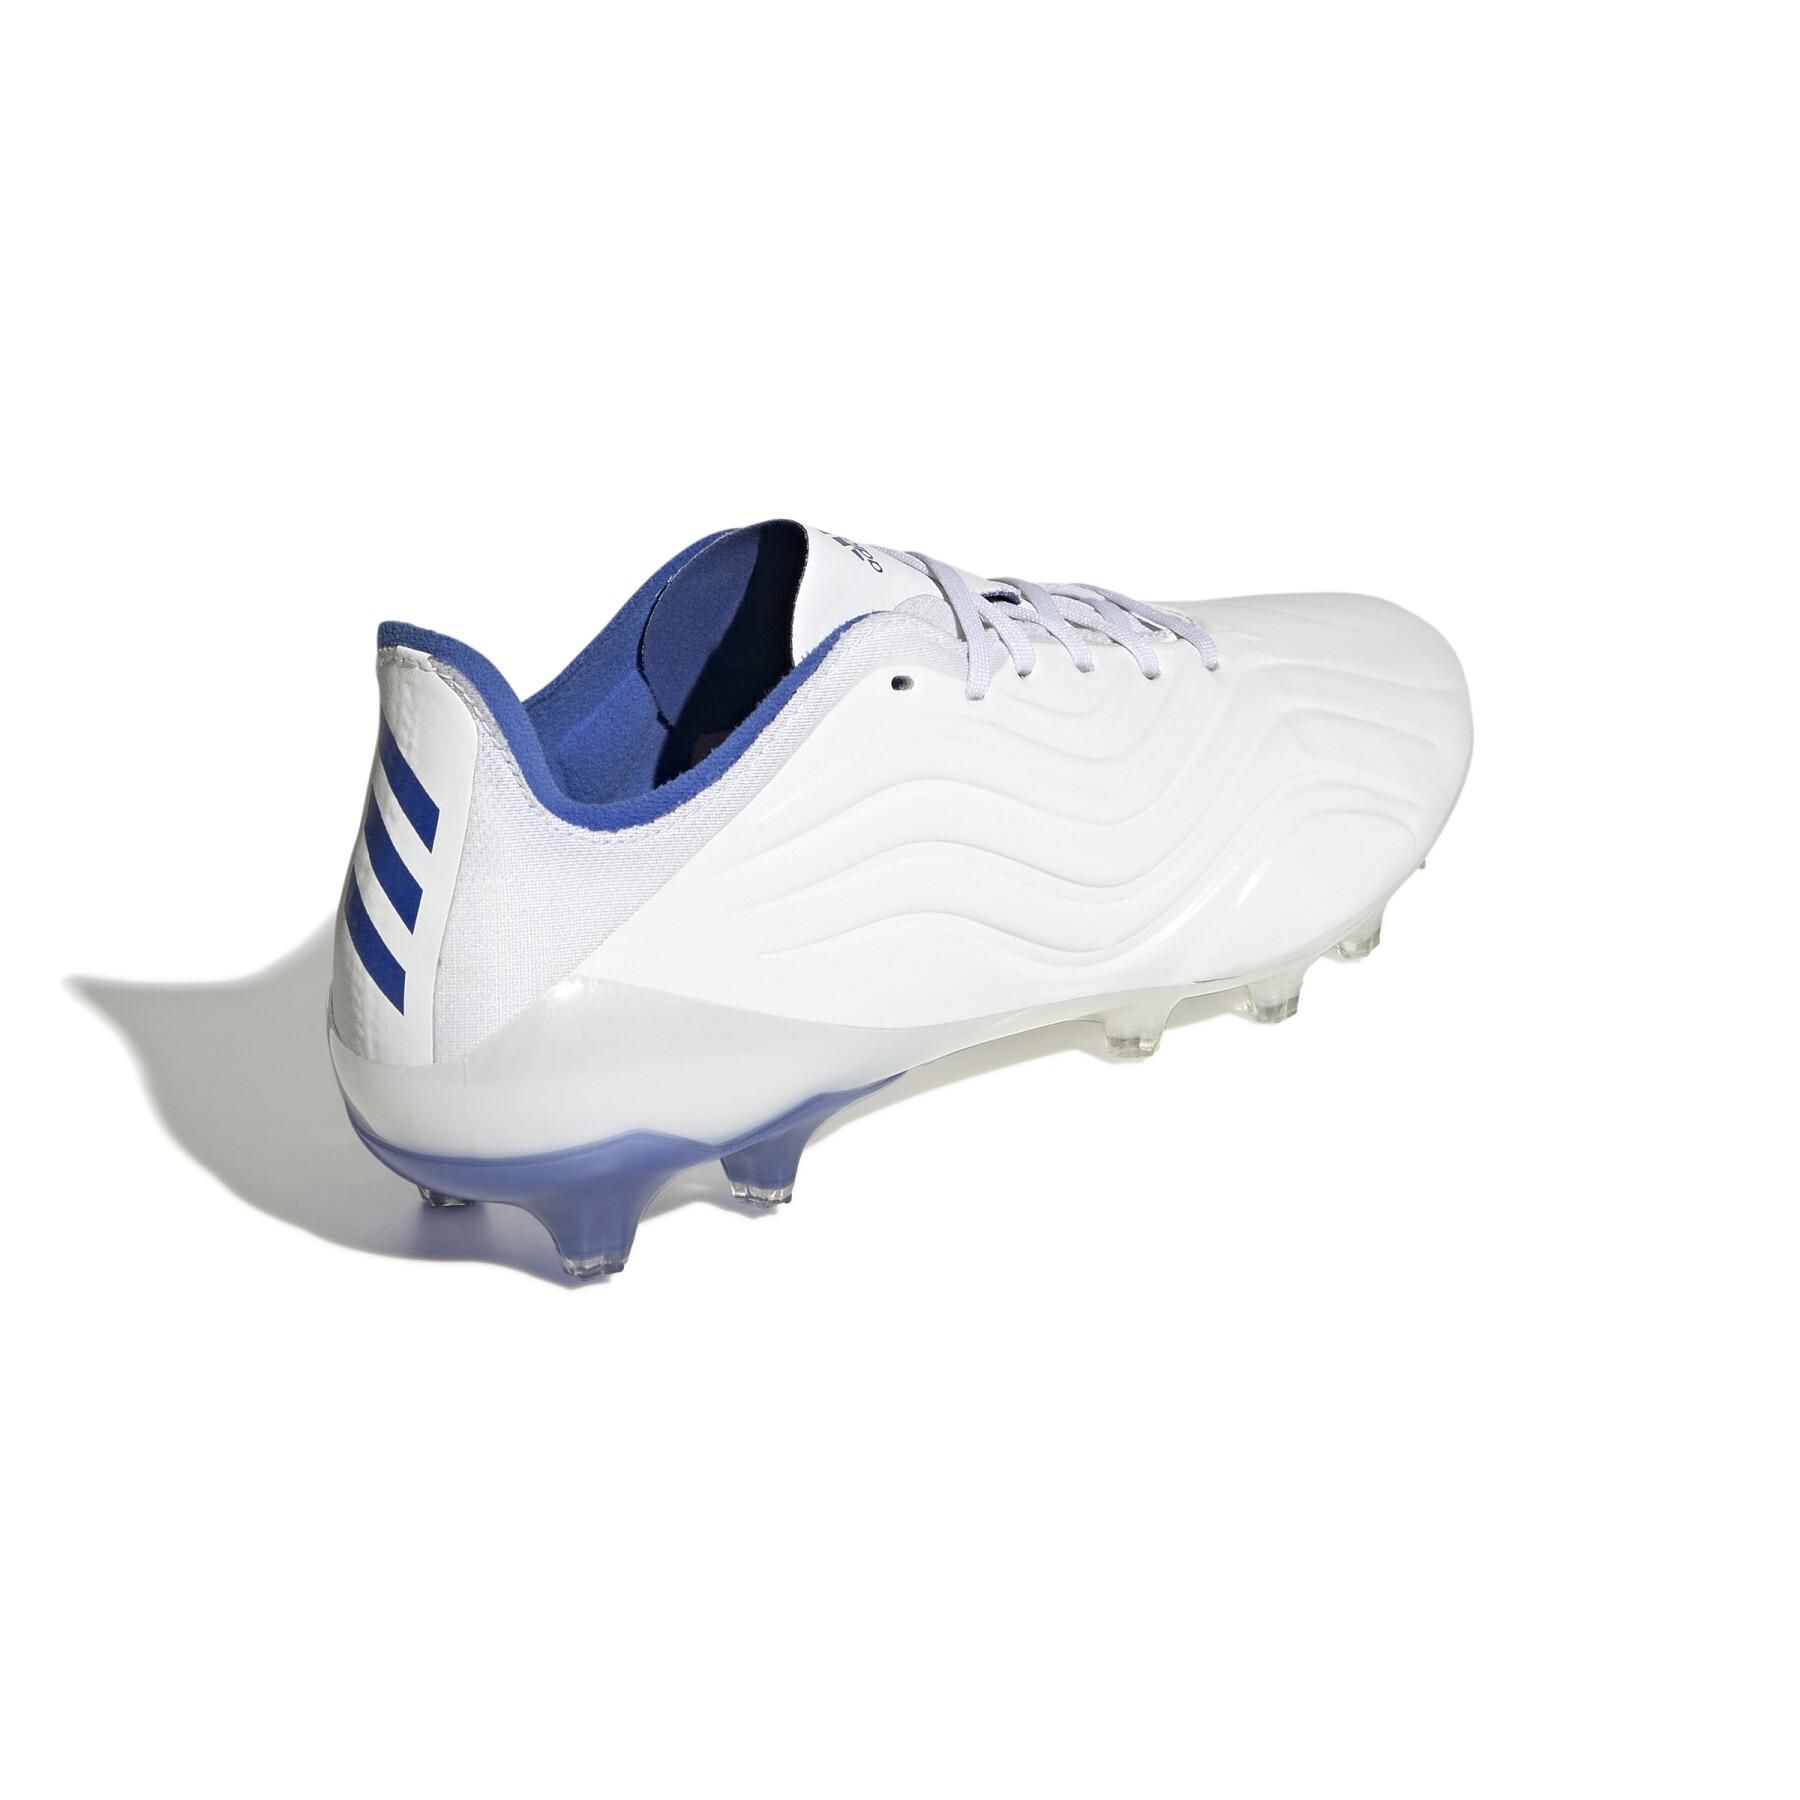 Chaussures de football adidas Copa Sense.1 AG - Diamond Edge Pack